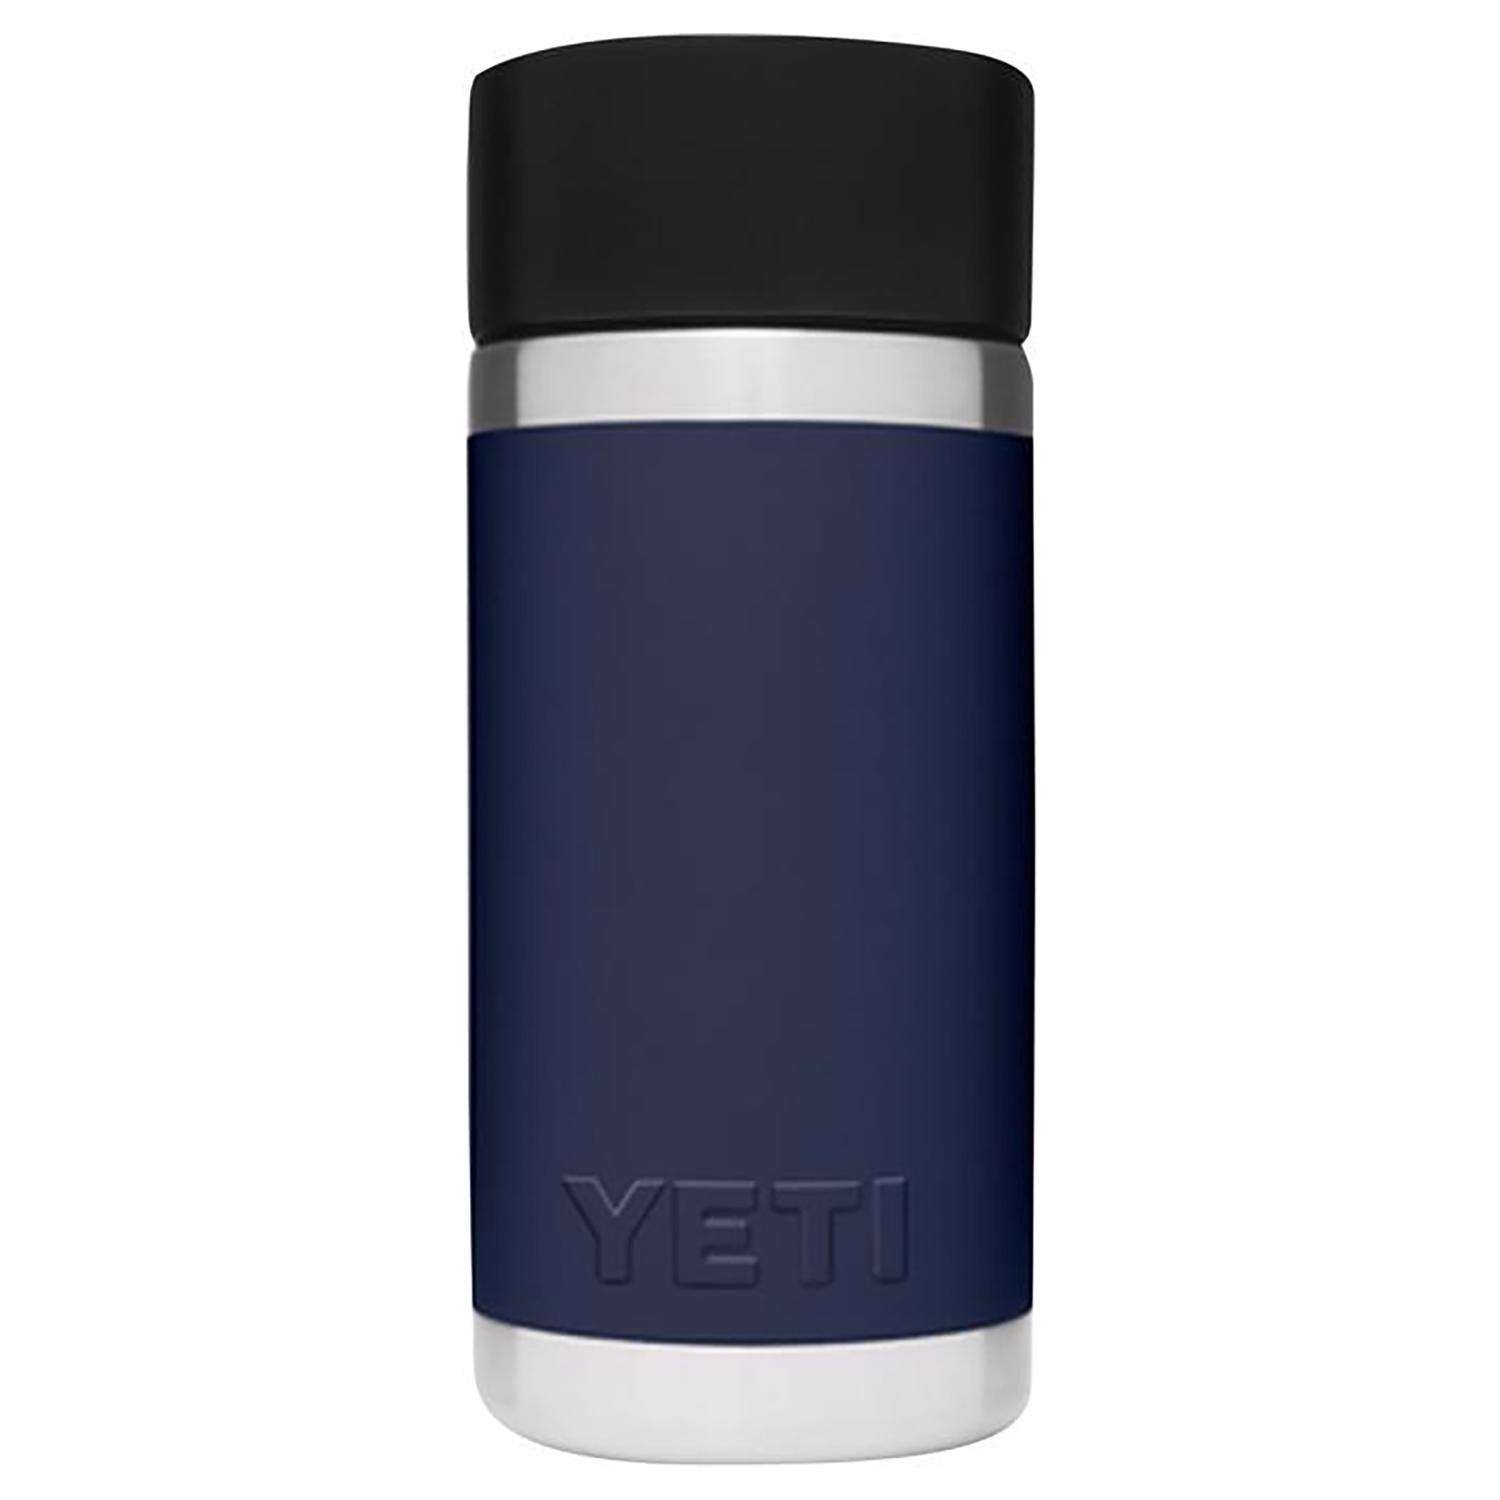 Personalized YETI Rambler 12 oz Bottle with Hotshot Cap - Duracoat